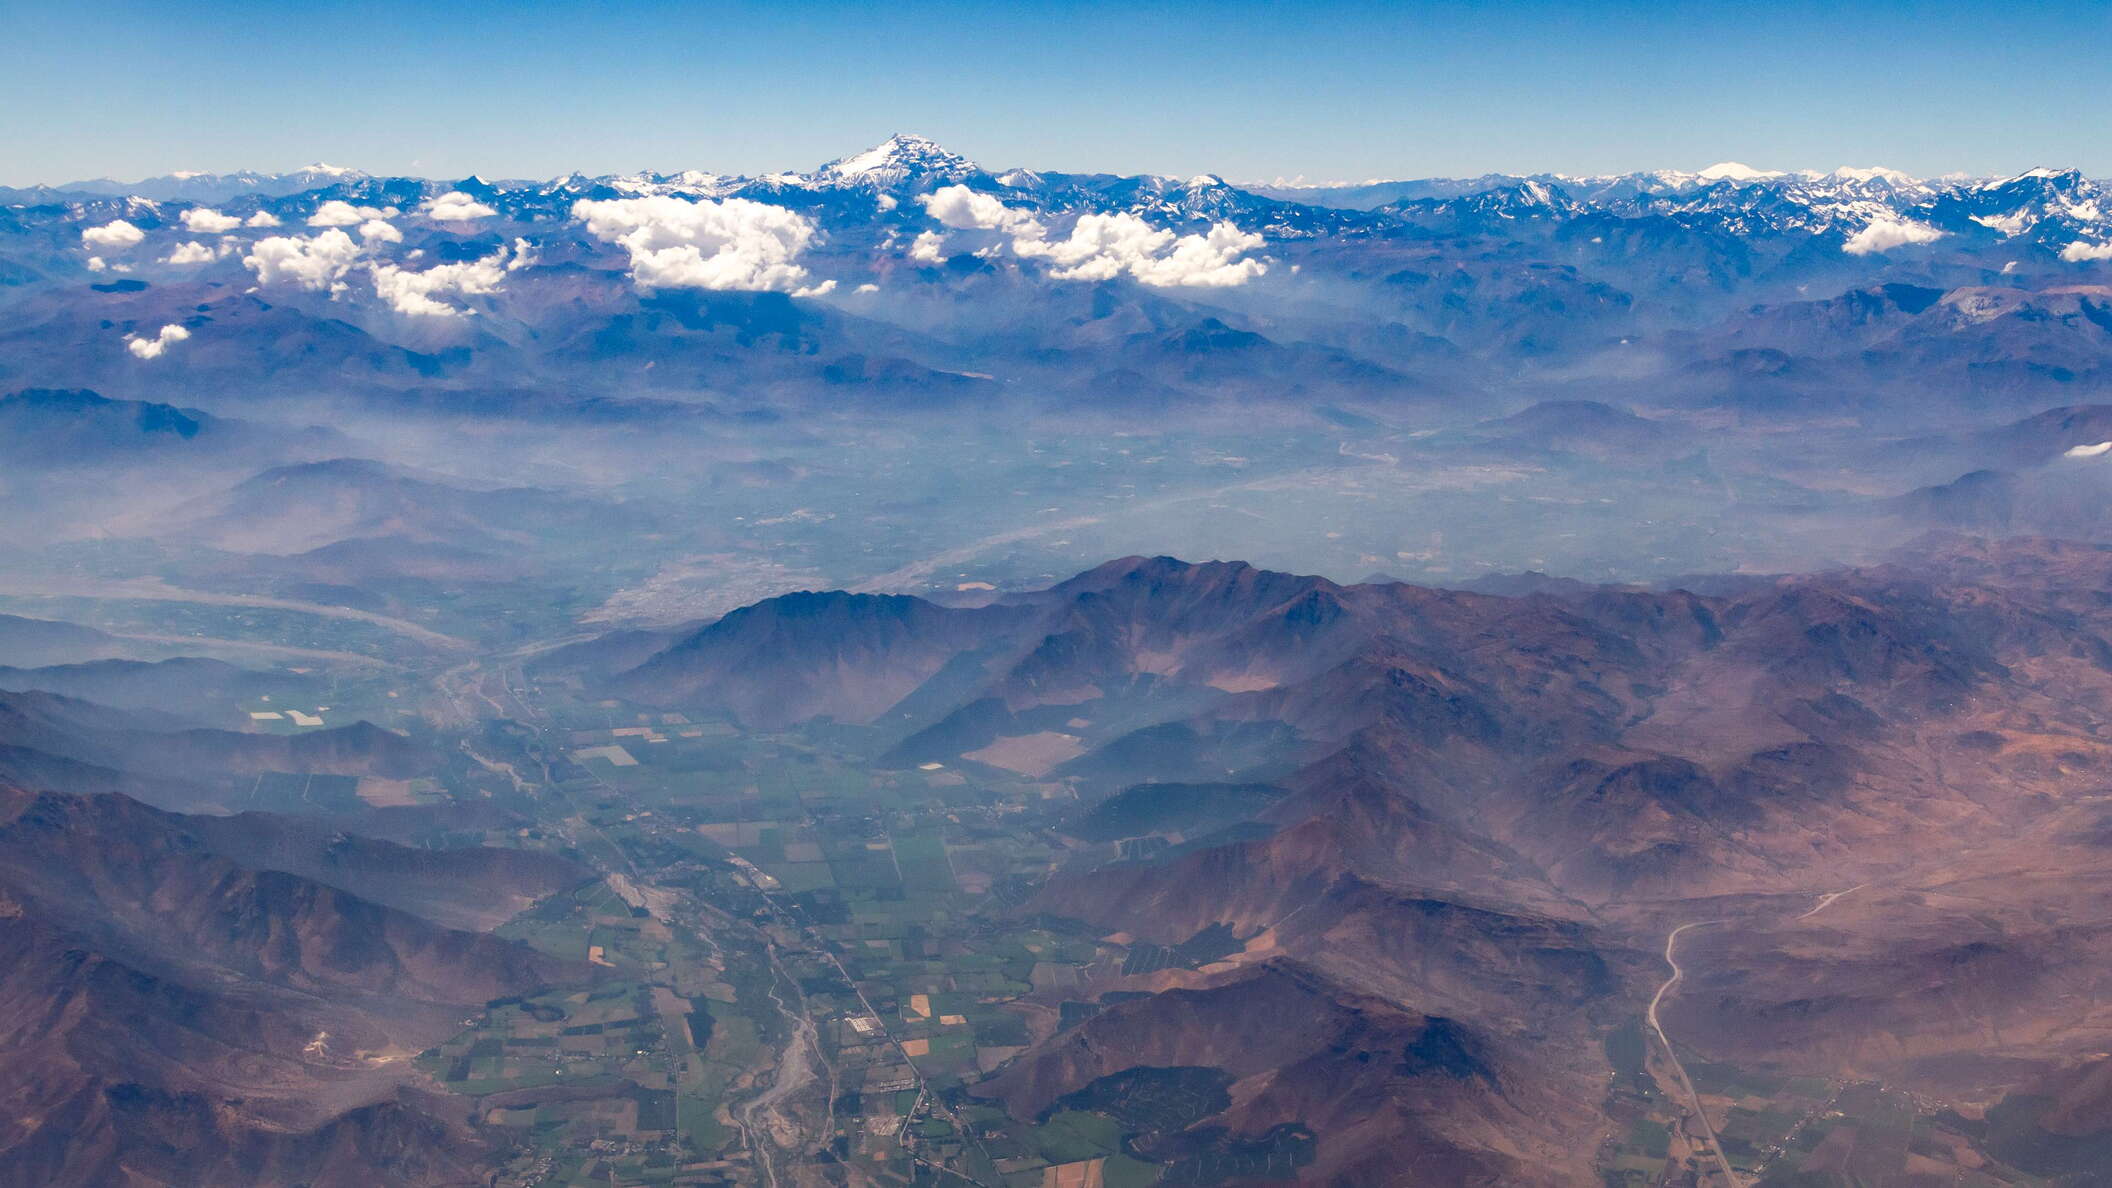 Valle del Aconcagua and Cerro Aconcagua